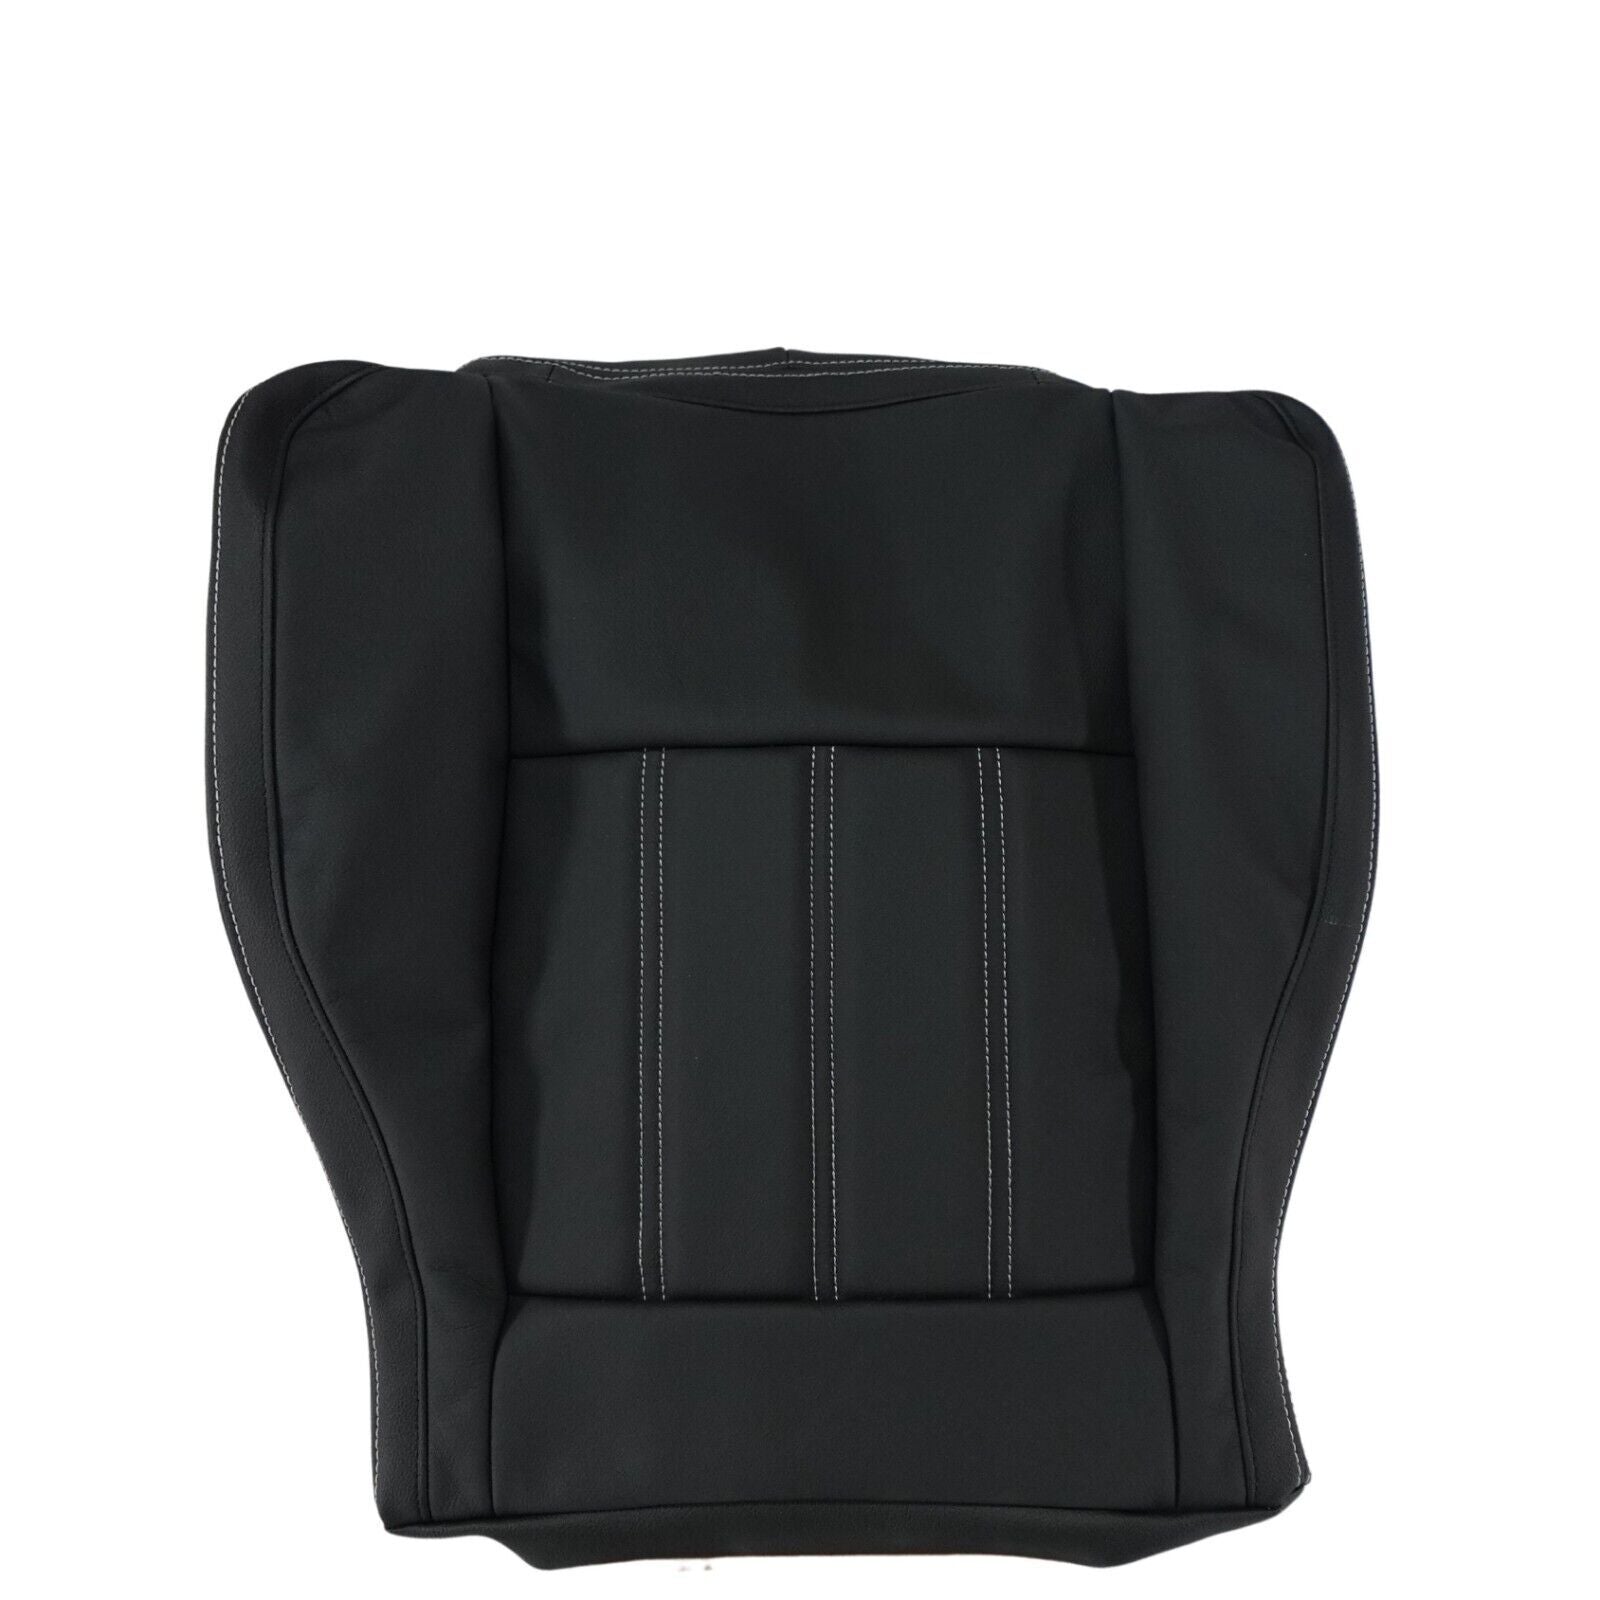 HSV VE GTS SENATOR FRONT SEAT BASE COVER LEATHER ONYX BLACK # HSV-J06-123293NY